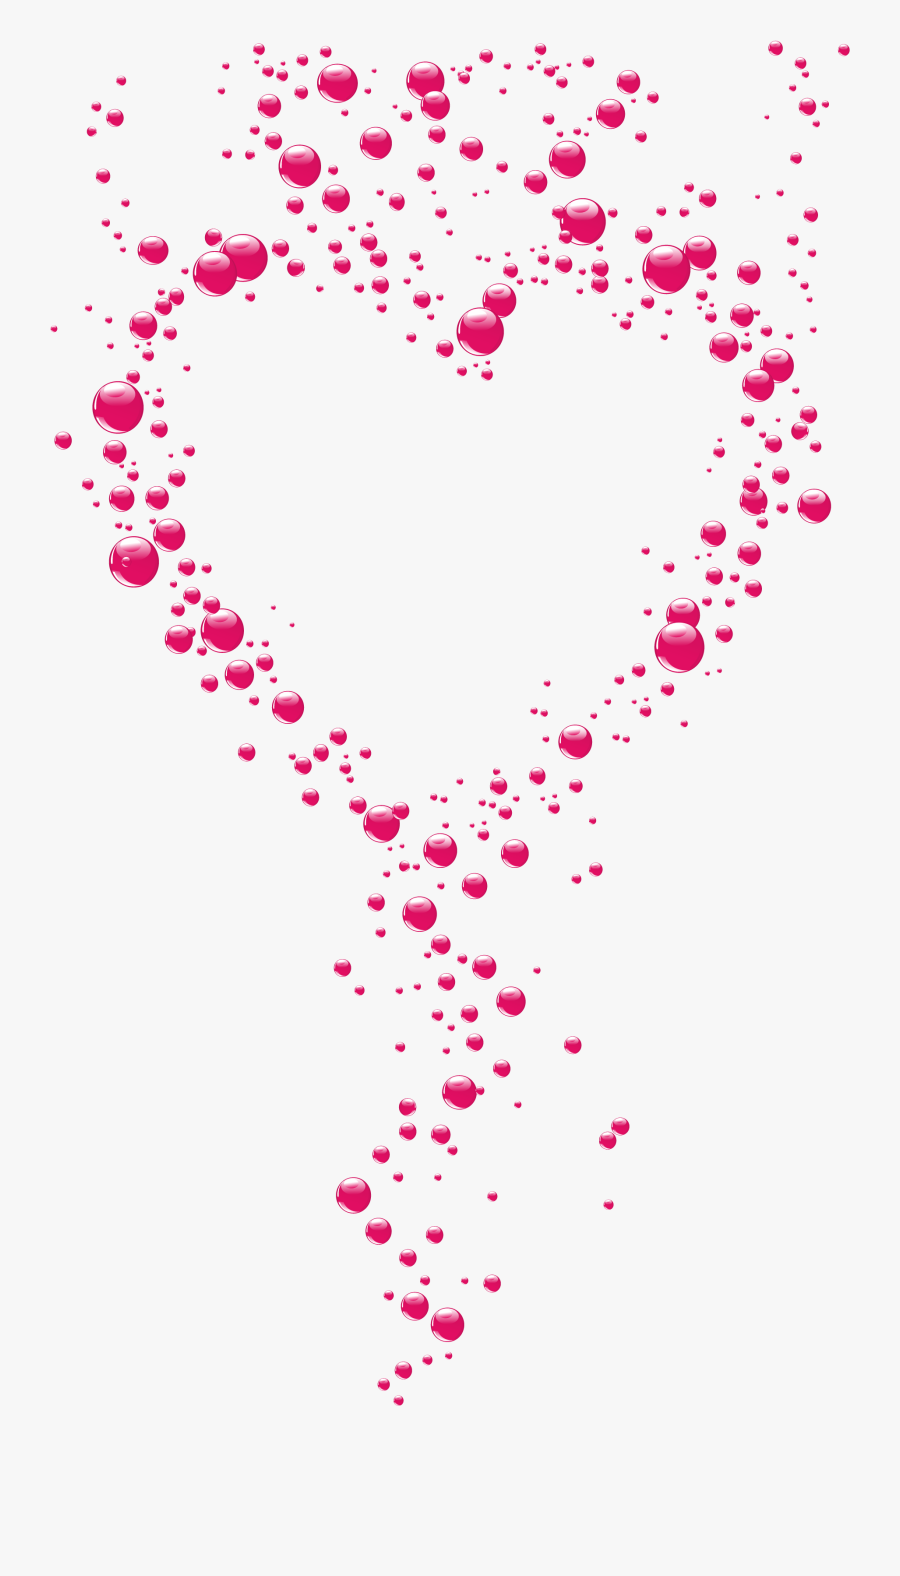 Svg Transparent Download Heart Bubbles Clipart - Heart Bubbles Clipart, Transparent Clipart